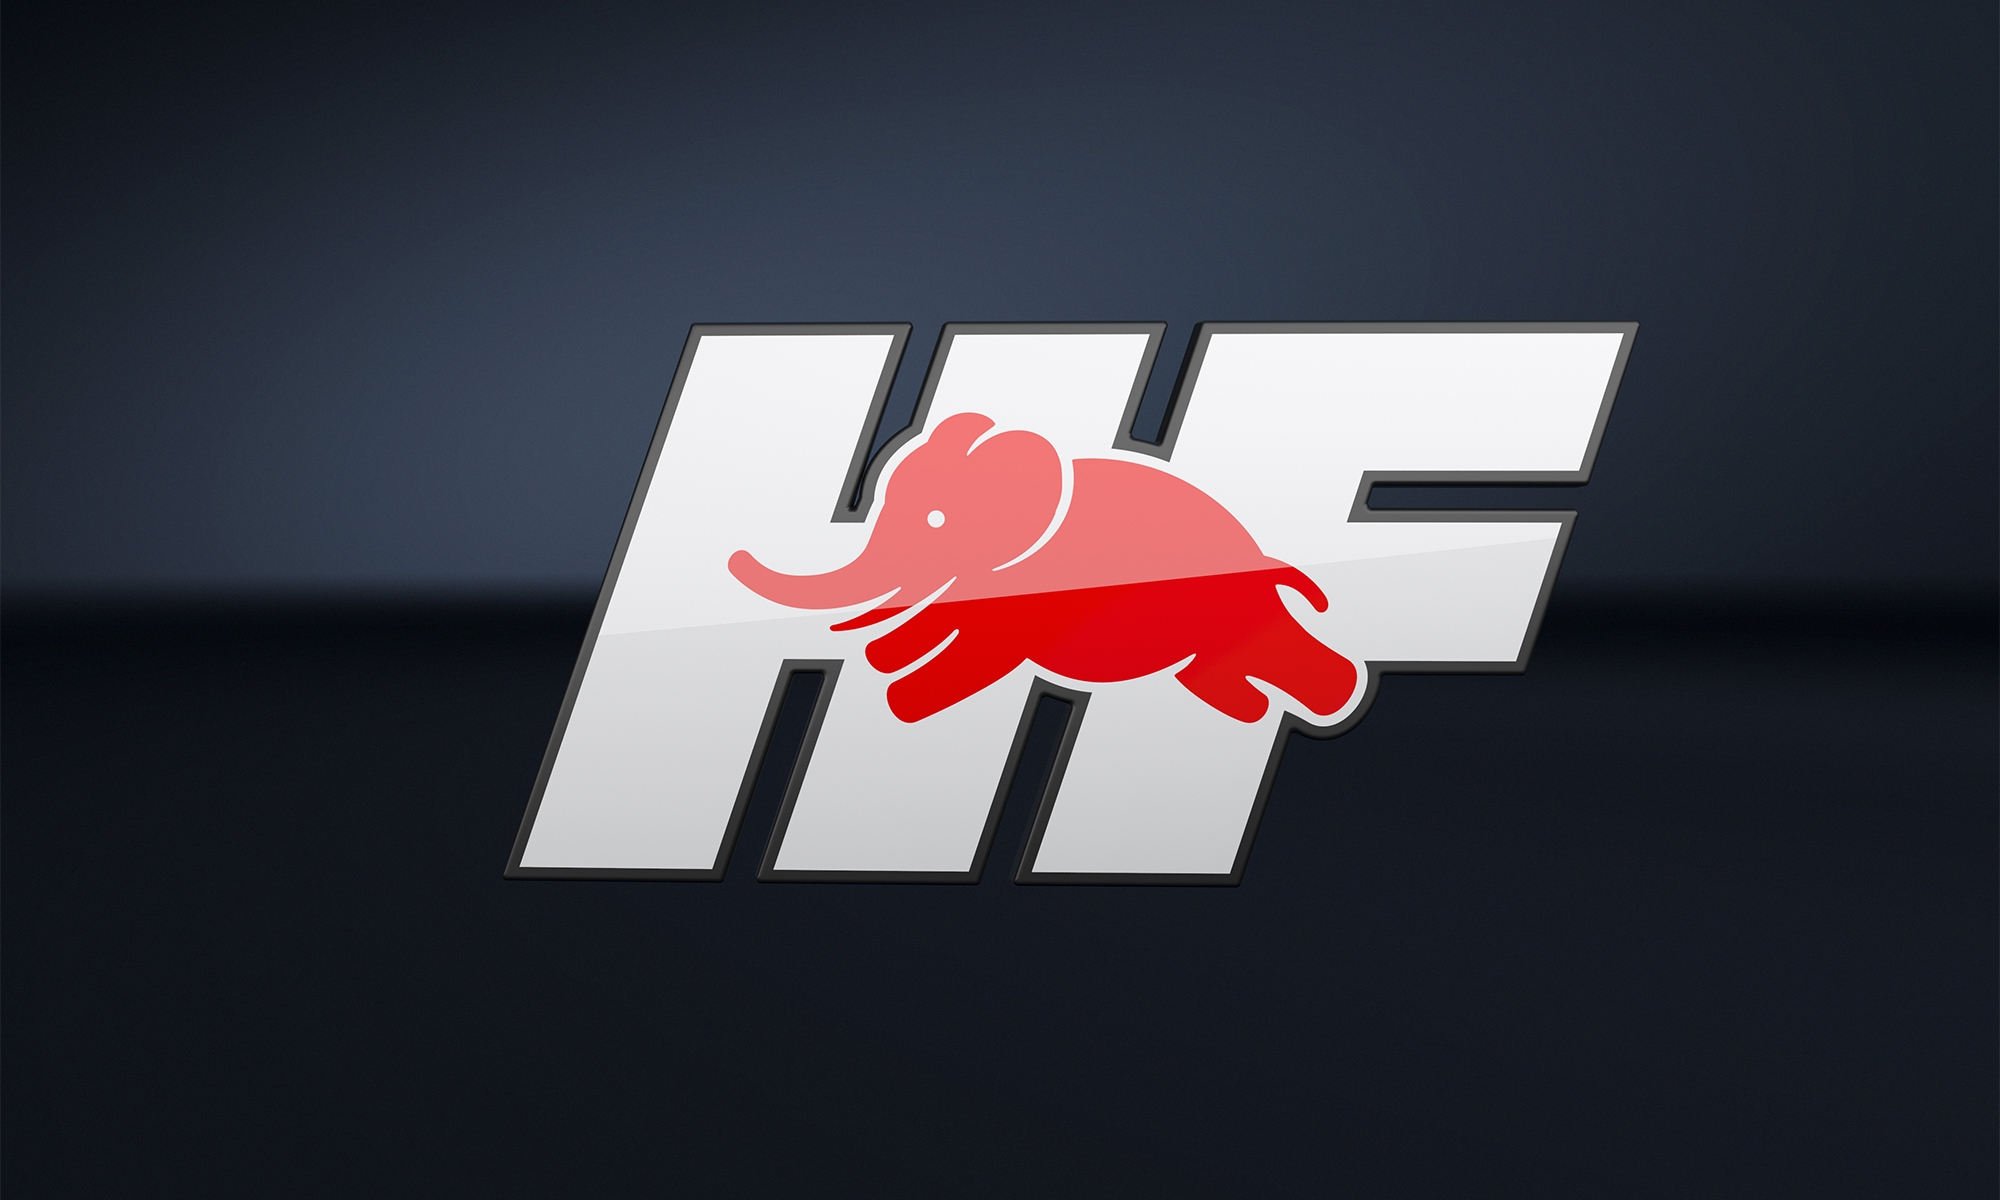 El logo de HF es una actualización del mítico usado en otros modelos históricos.